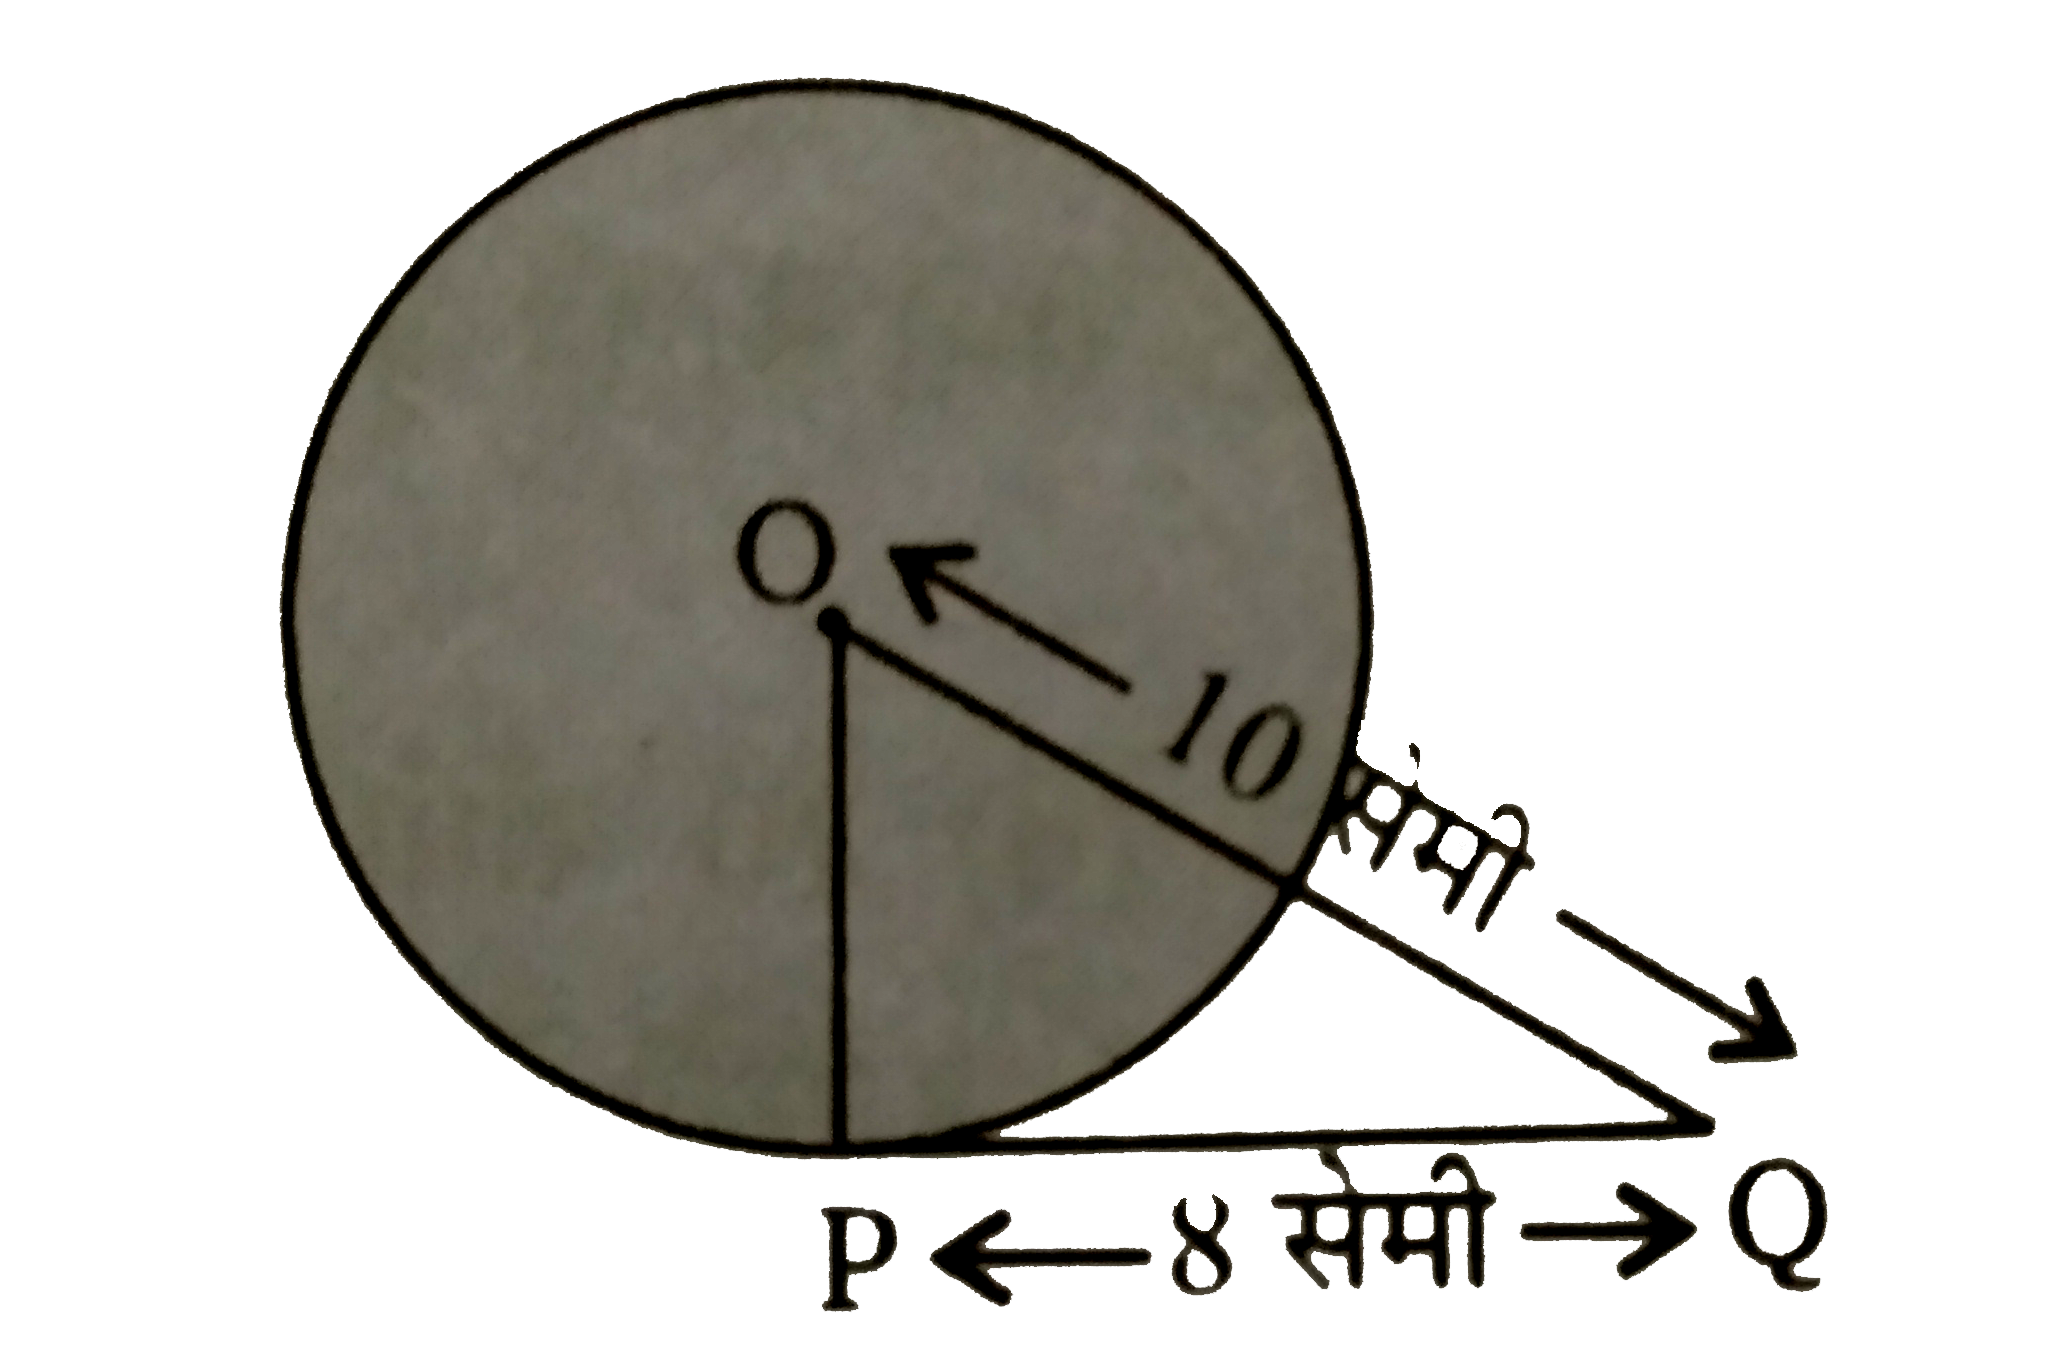 दिये गये चिंत्र में,  O वृत्त का केंद्र है तथा PQ  वृत्त के बिन्दु P पर स्पर्शी है। यदि PQ = 8  सेमी तथा OQ = 10  सेमी हो तो वृत्त की त्रिज्या ज्ञात कीजिए ।